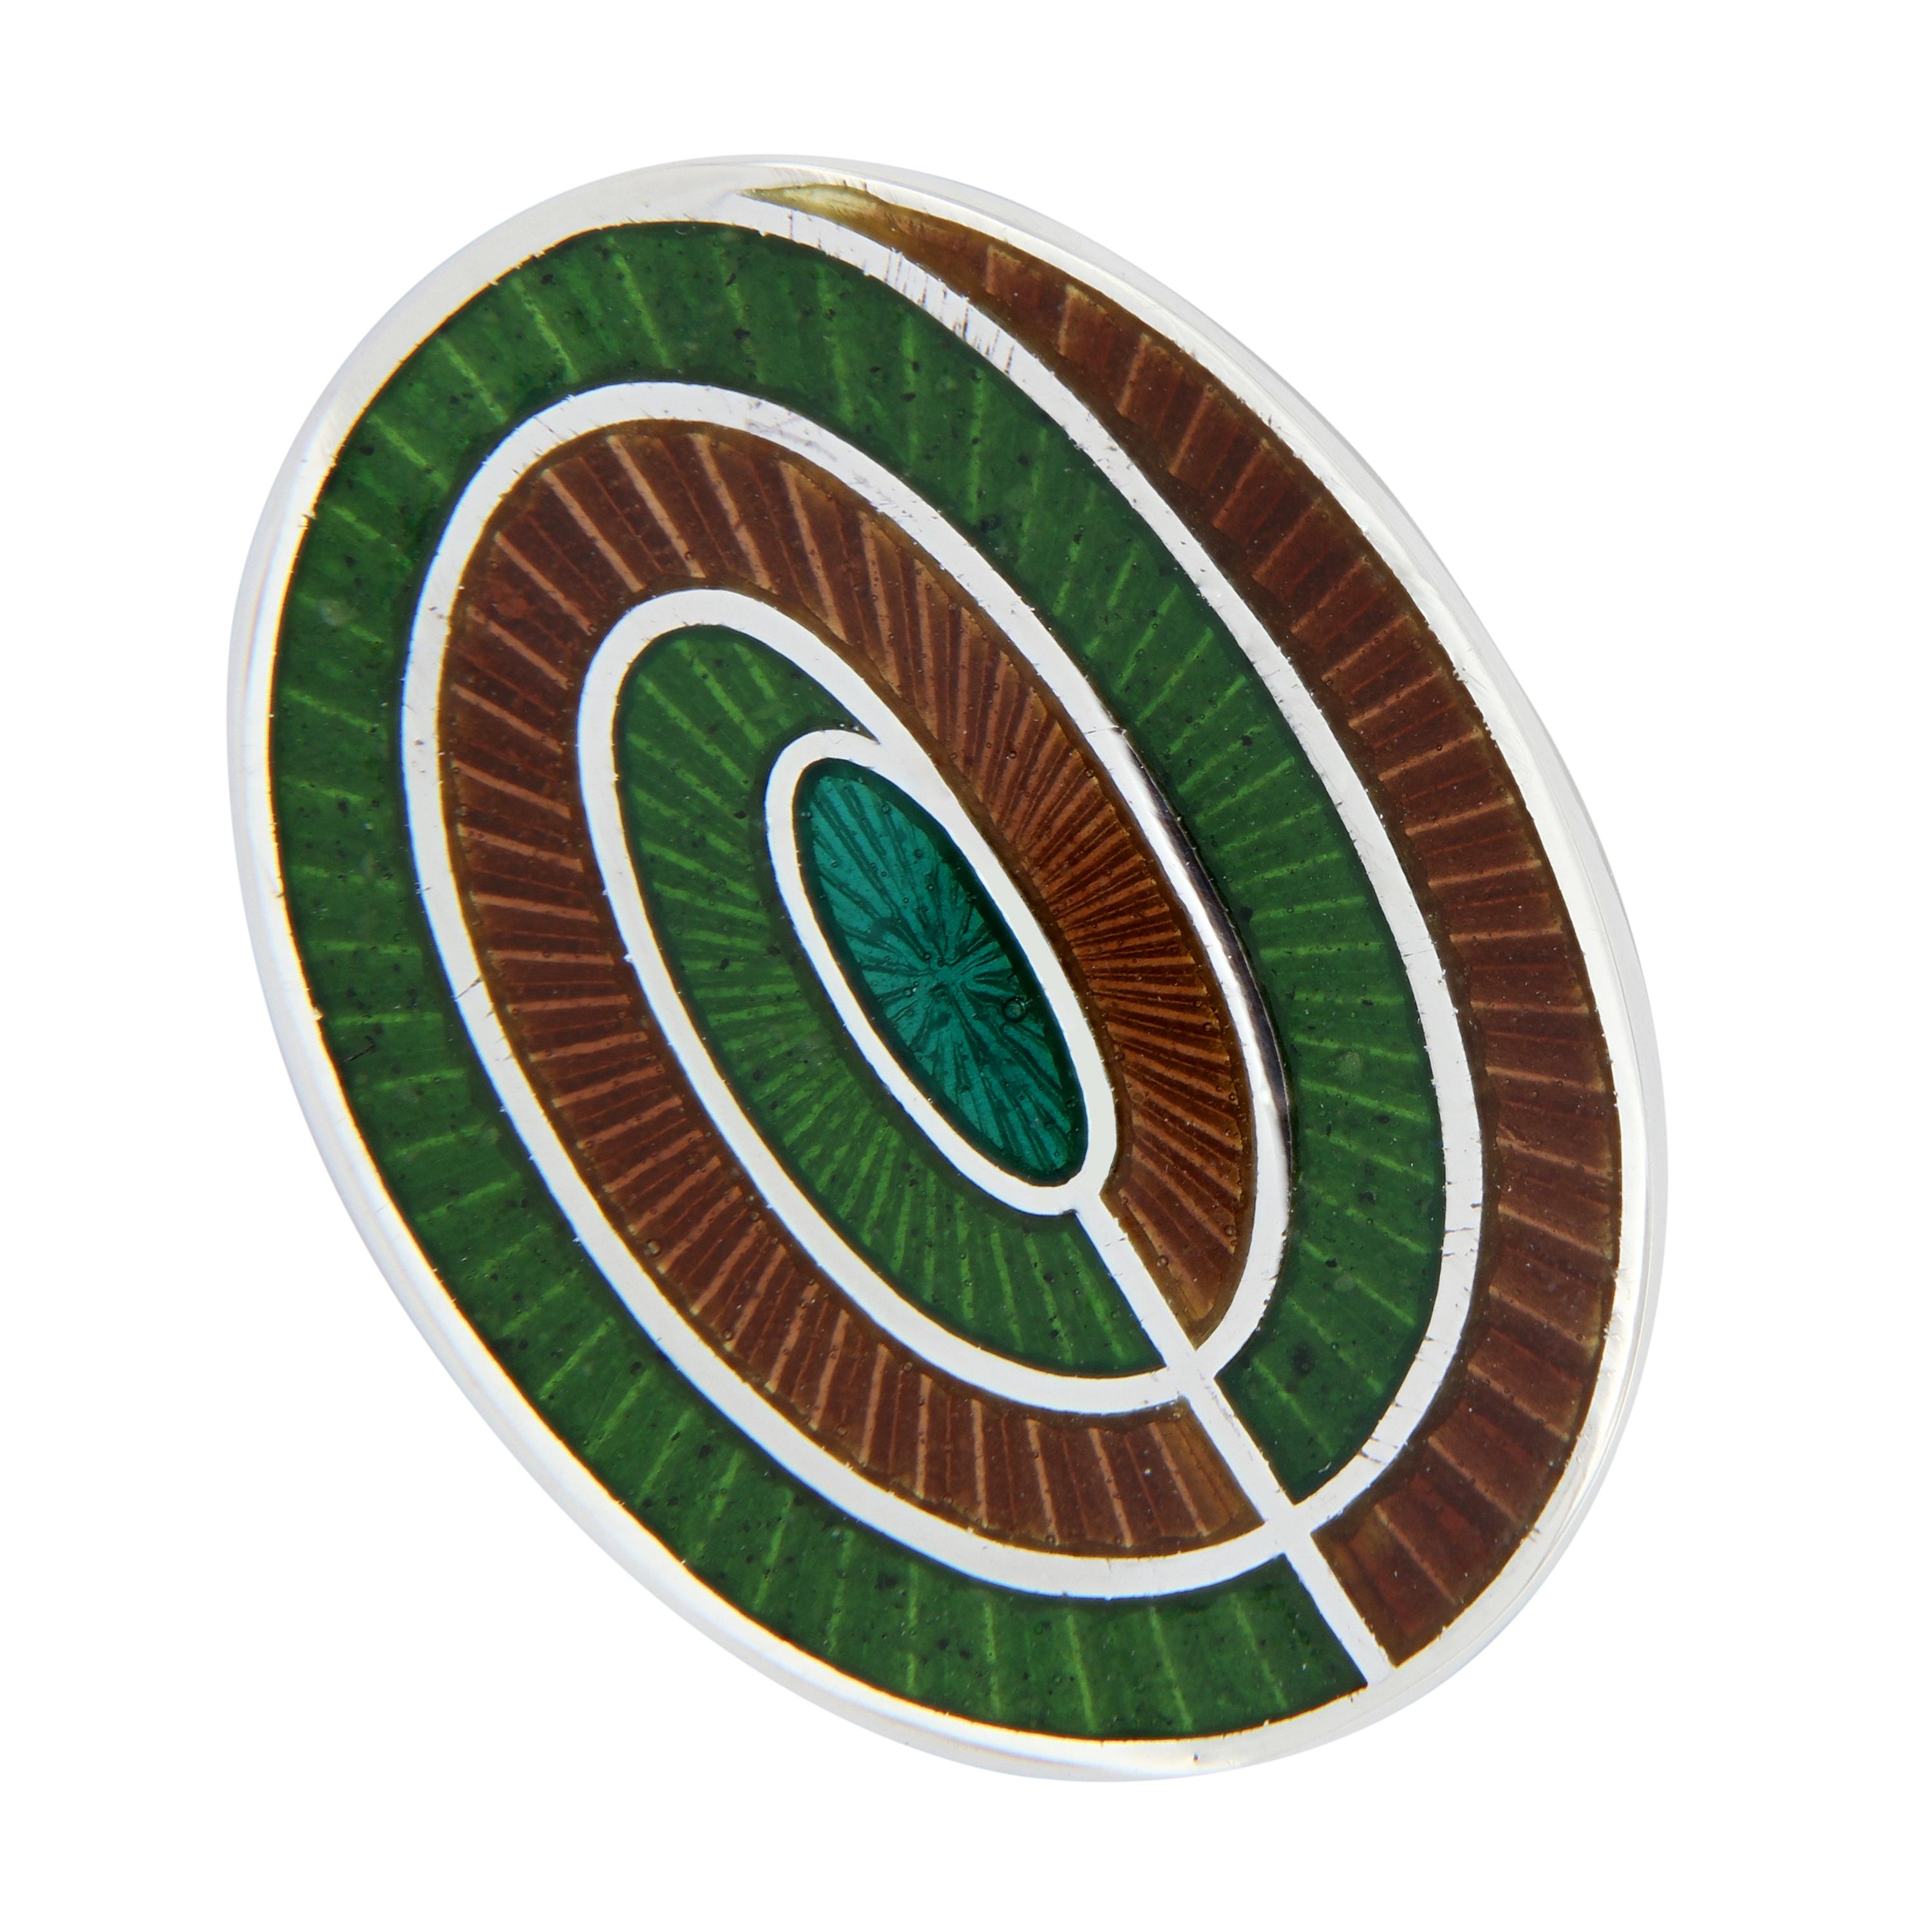 Schöne Manschettenknöpfe mit Guilloche-Emaille im zeitgenössischen Spiraldesign. Handgefertigt in England für Campanelli & Pear. Wiegt 12,6 Gramm. Das Oval misst 14 mm x 19 mm.
